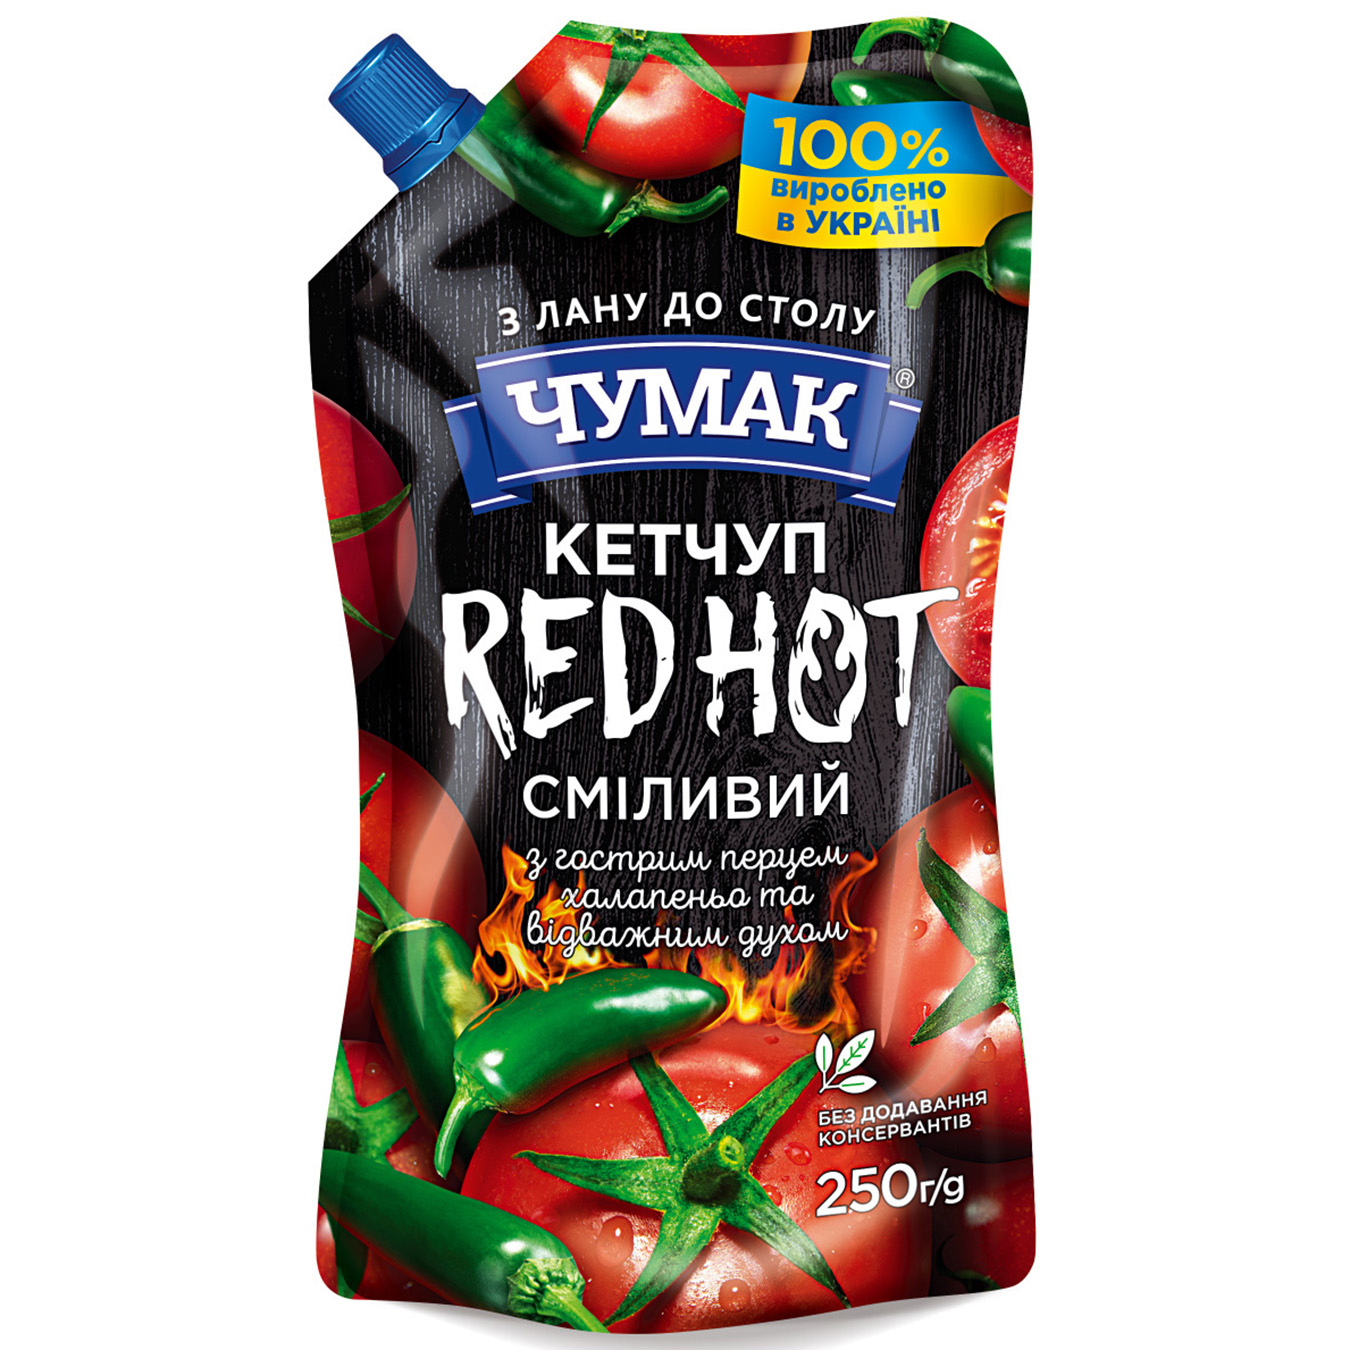 Chumak Ketchup Red Hot 250g